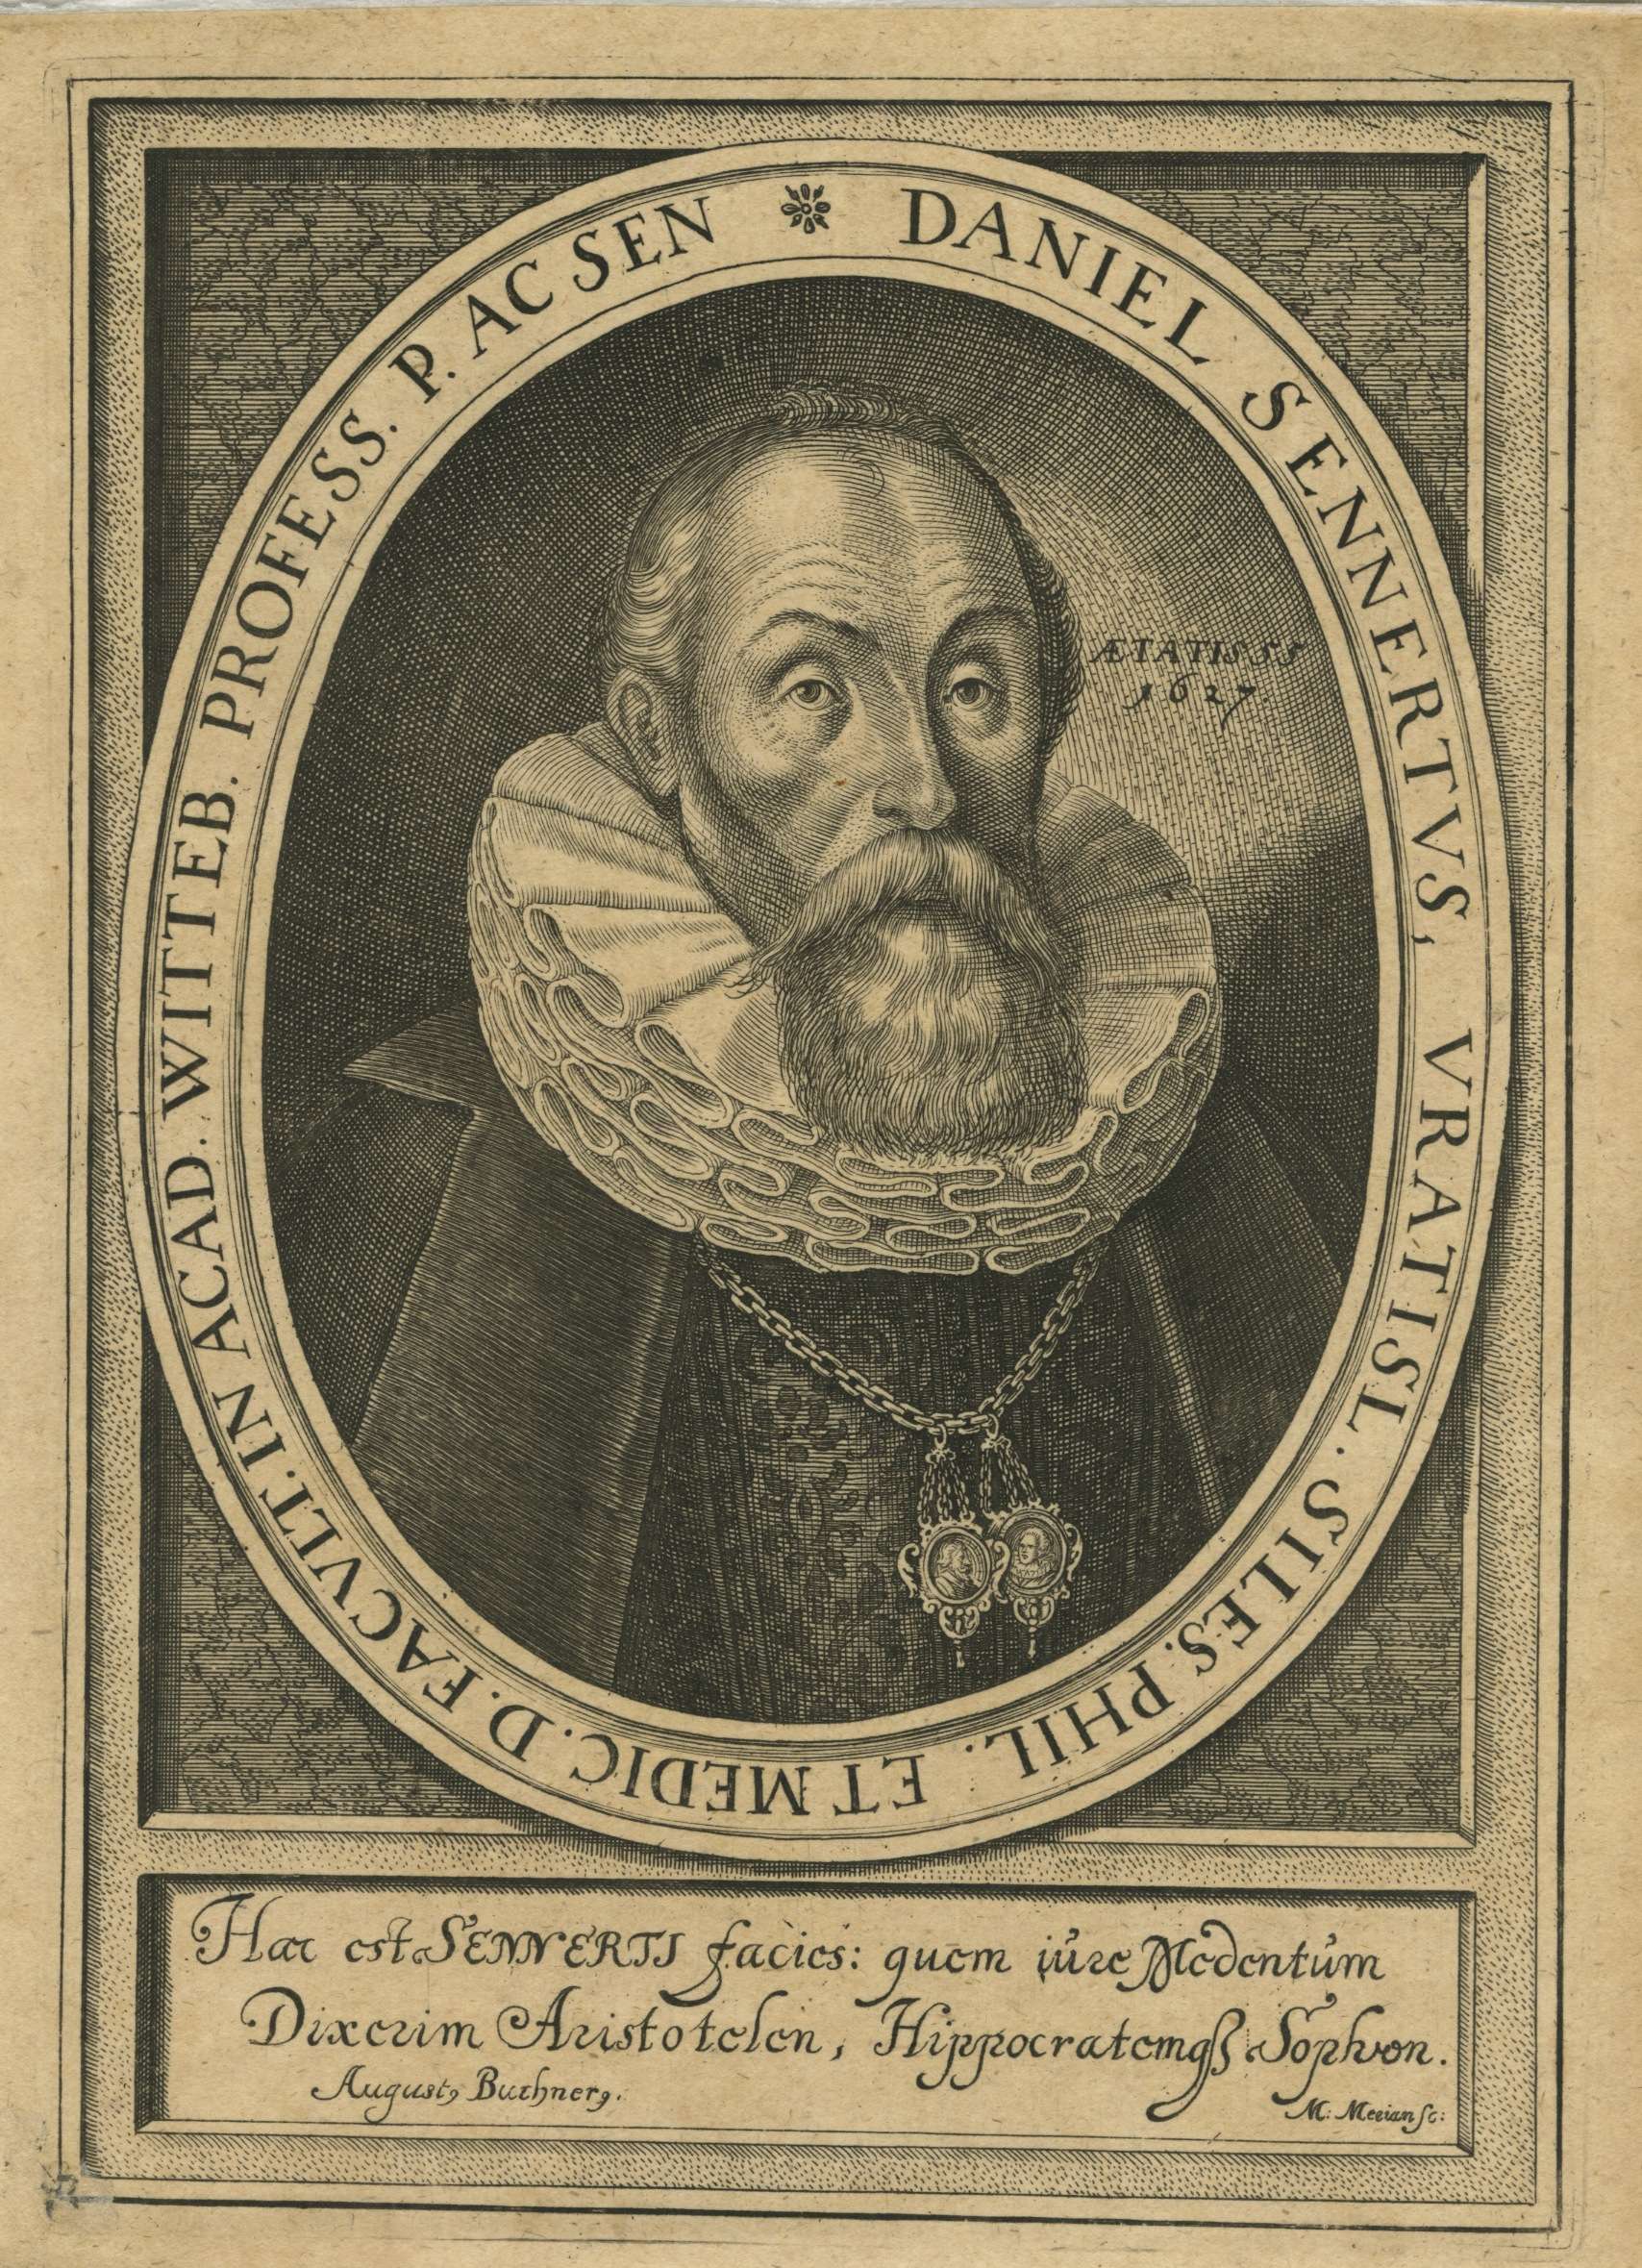 Engraved portrait of Daniel Sennert